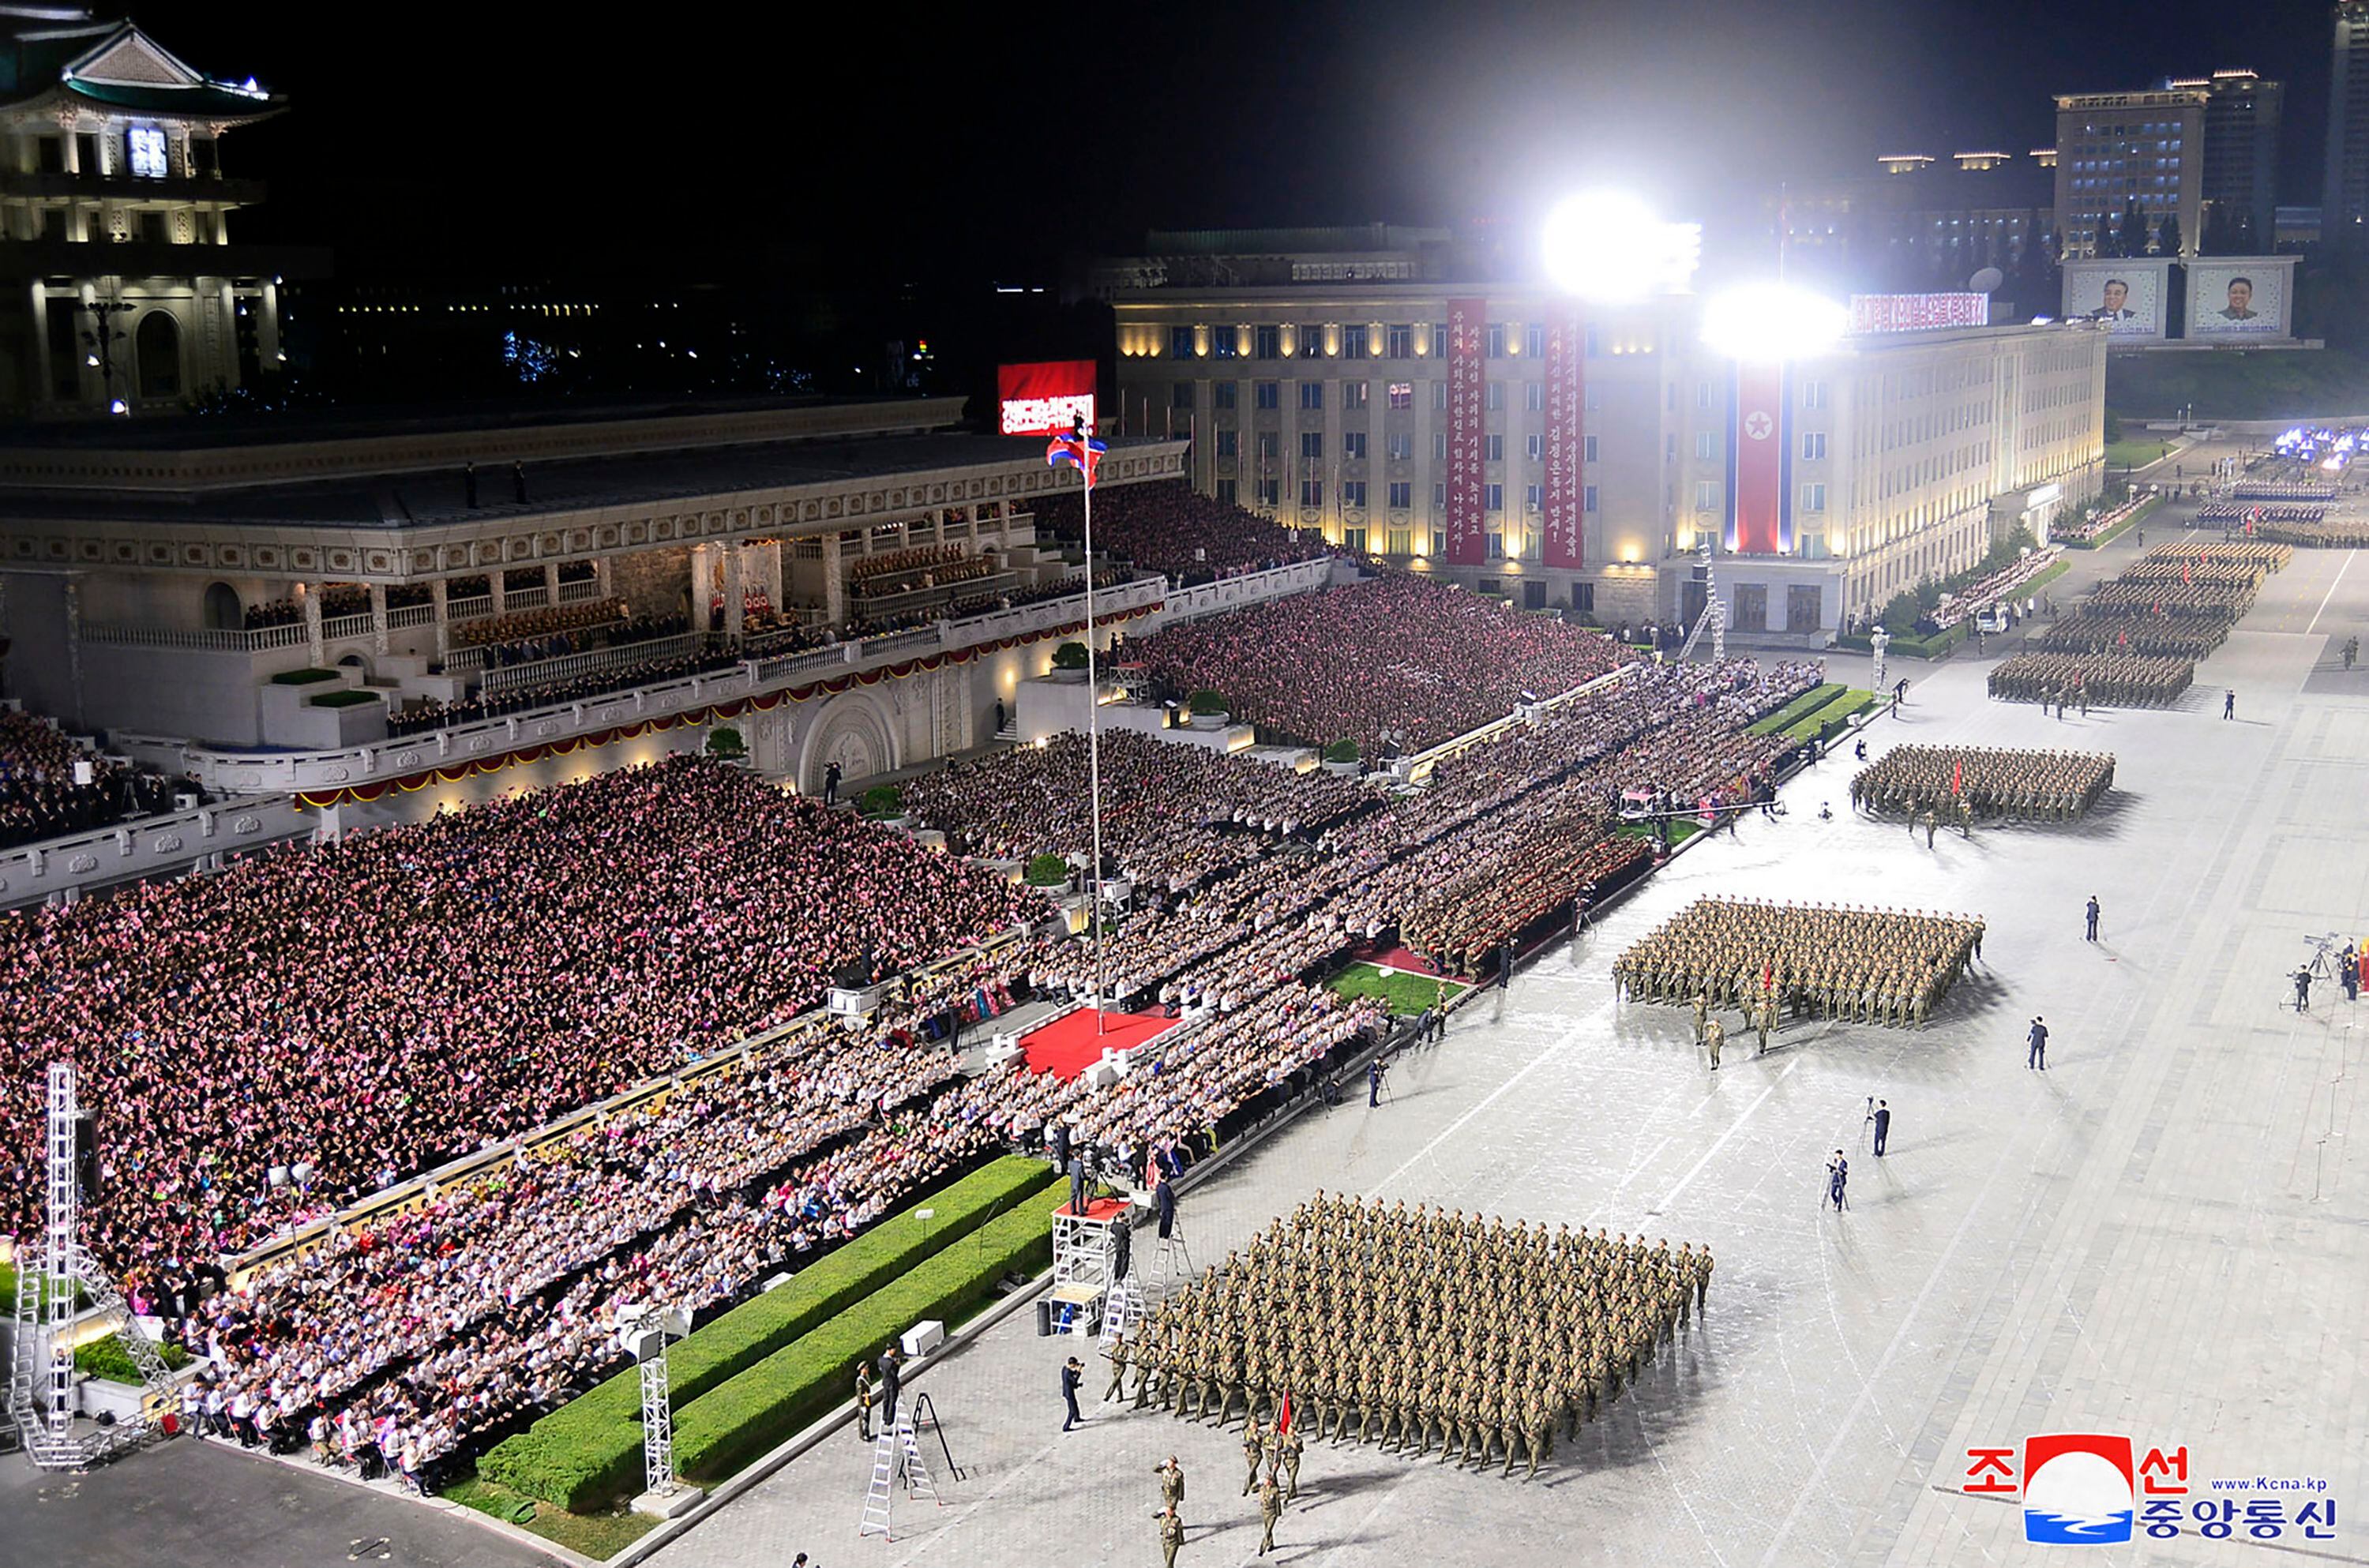 El desfile paramilitar del viernes 8 de septiembre en conmemoración del 75º aniversario de la fundación de Corea del Norte, en la Plaza Kim Il Sung de Pyongyang, Corea del Norte. (Agencia Central de Noticias de Corea/Korea News Service vía AP)